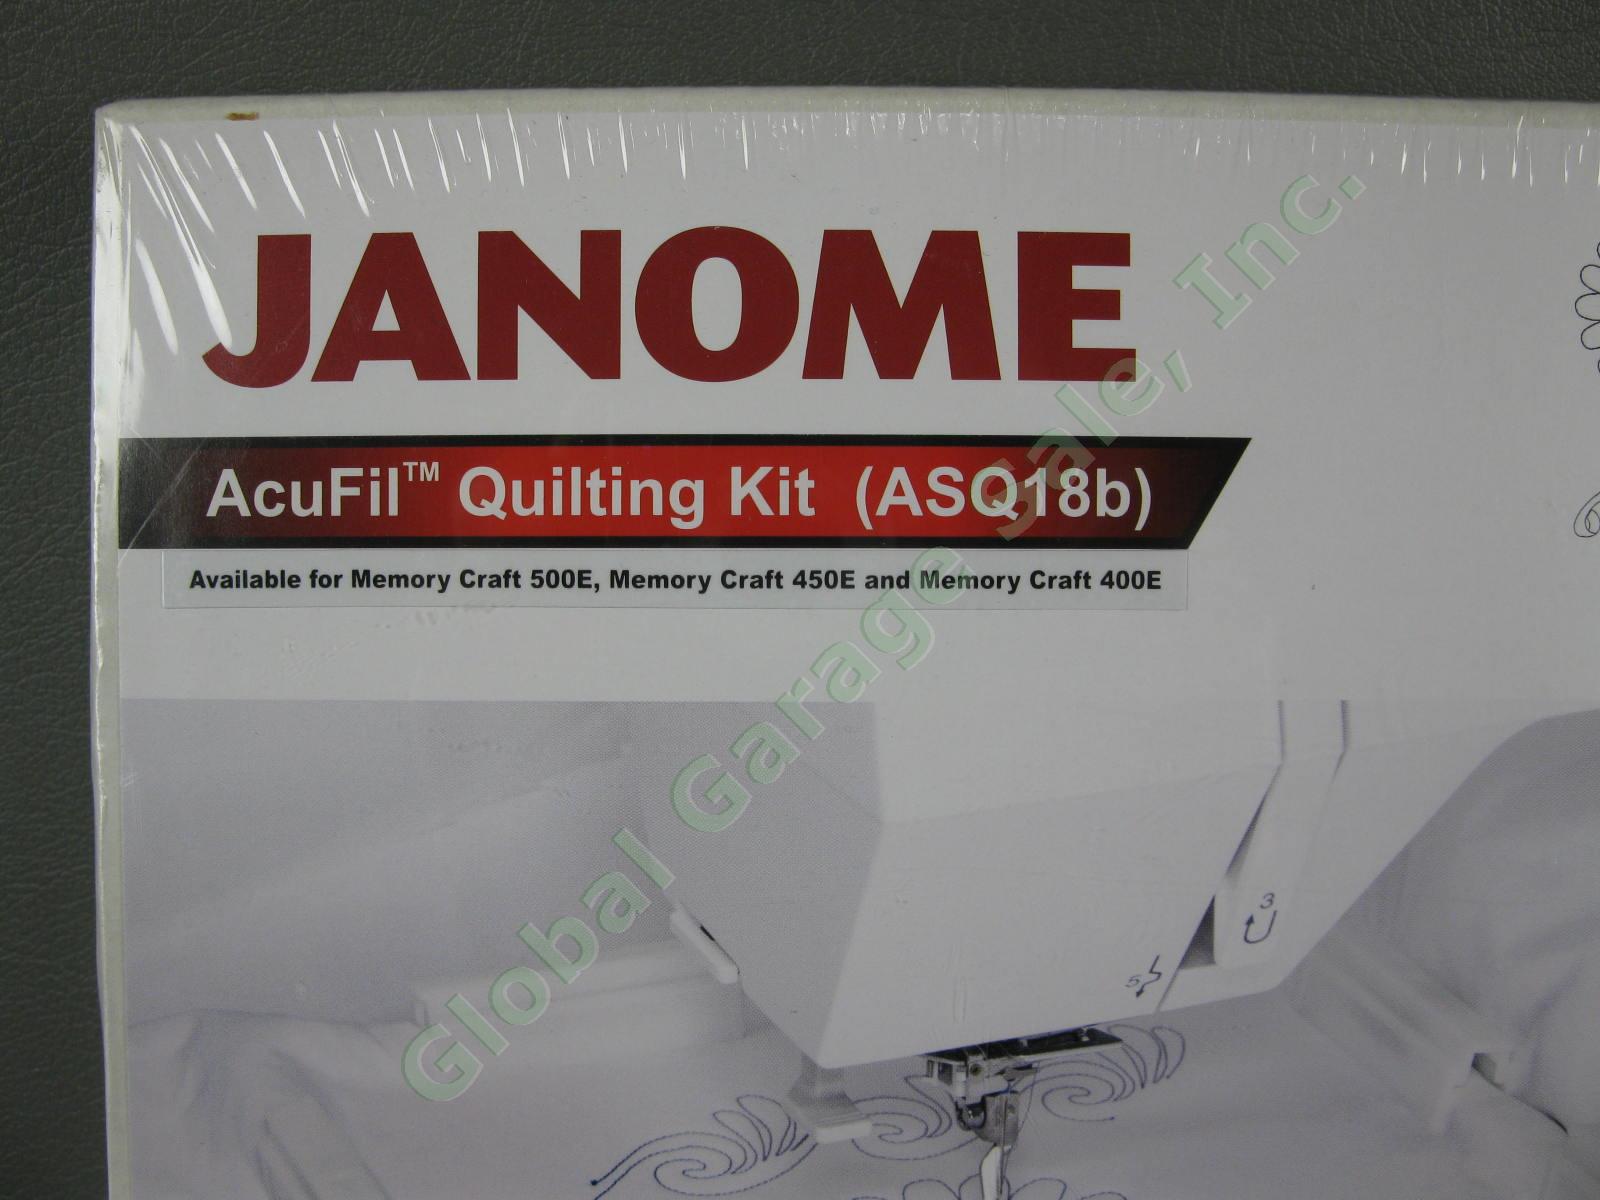 New Janome AcuFil Quilting Kit ASQ18b 864402008 Memory Craft MC400E 450E 500E 1